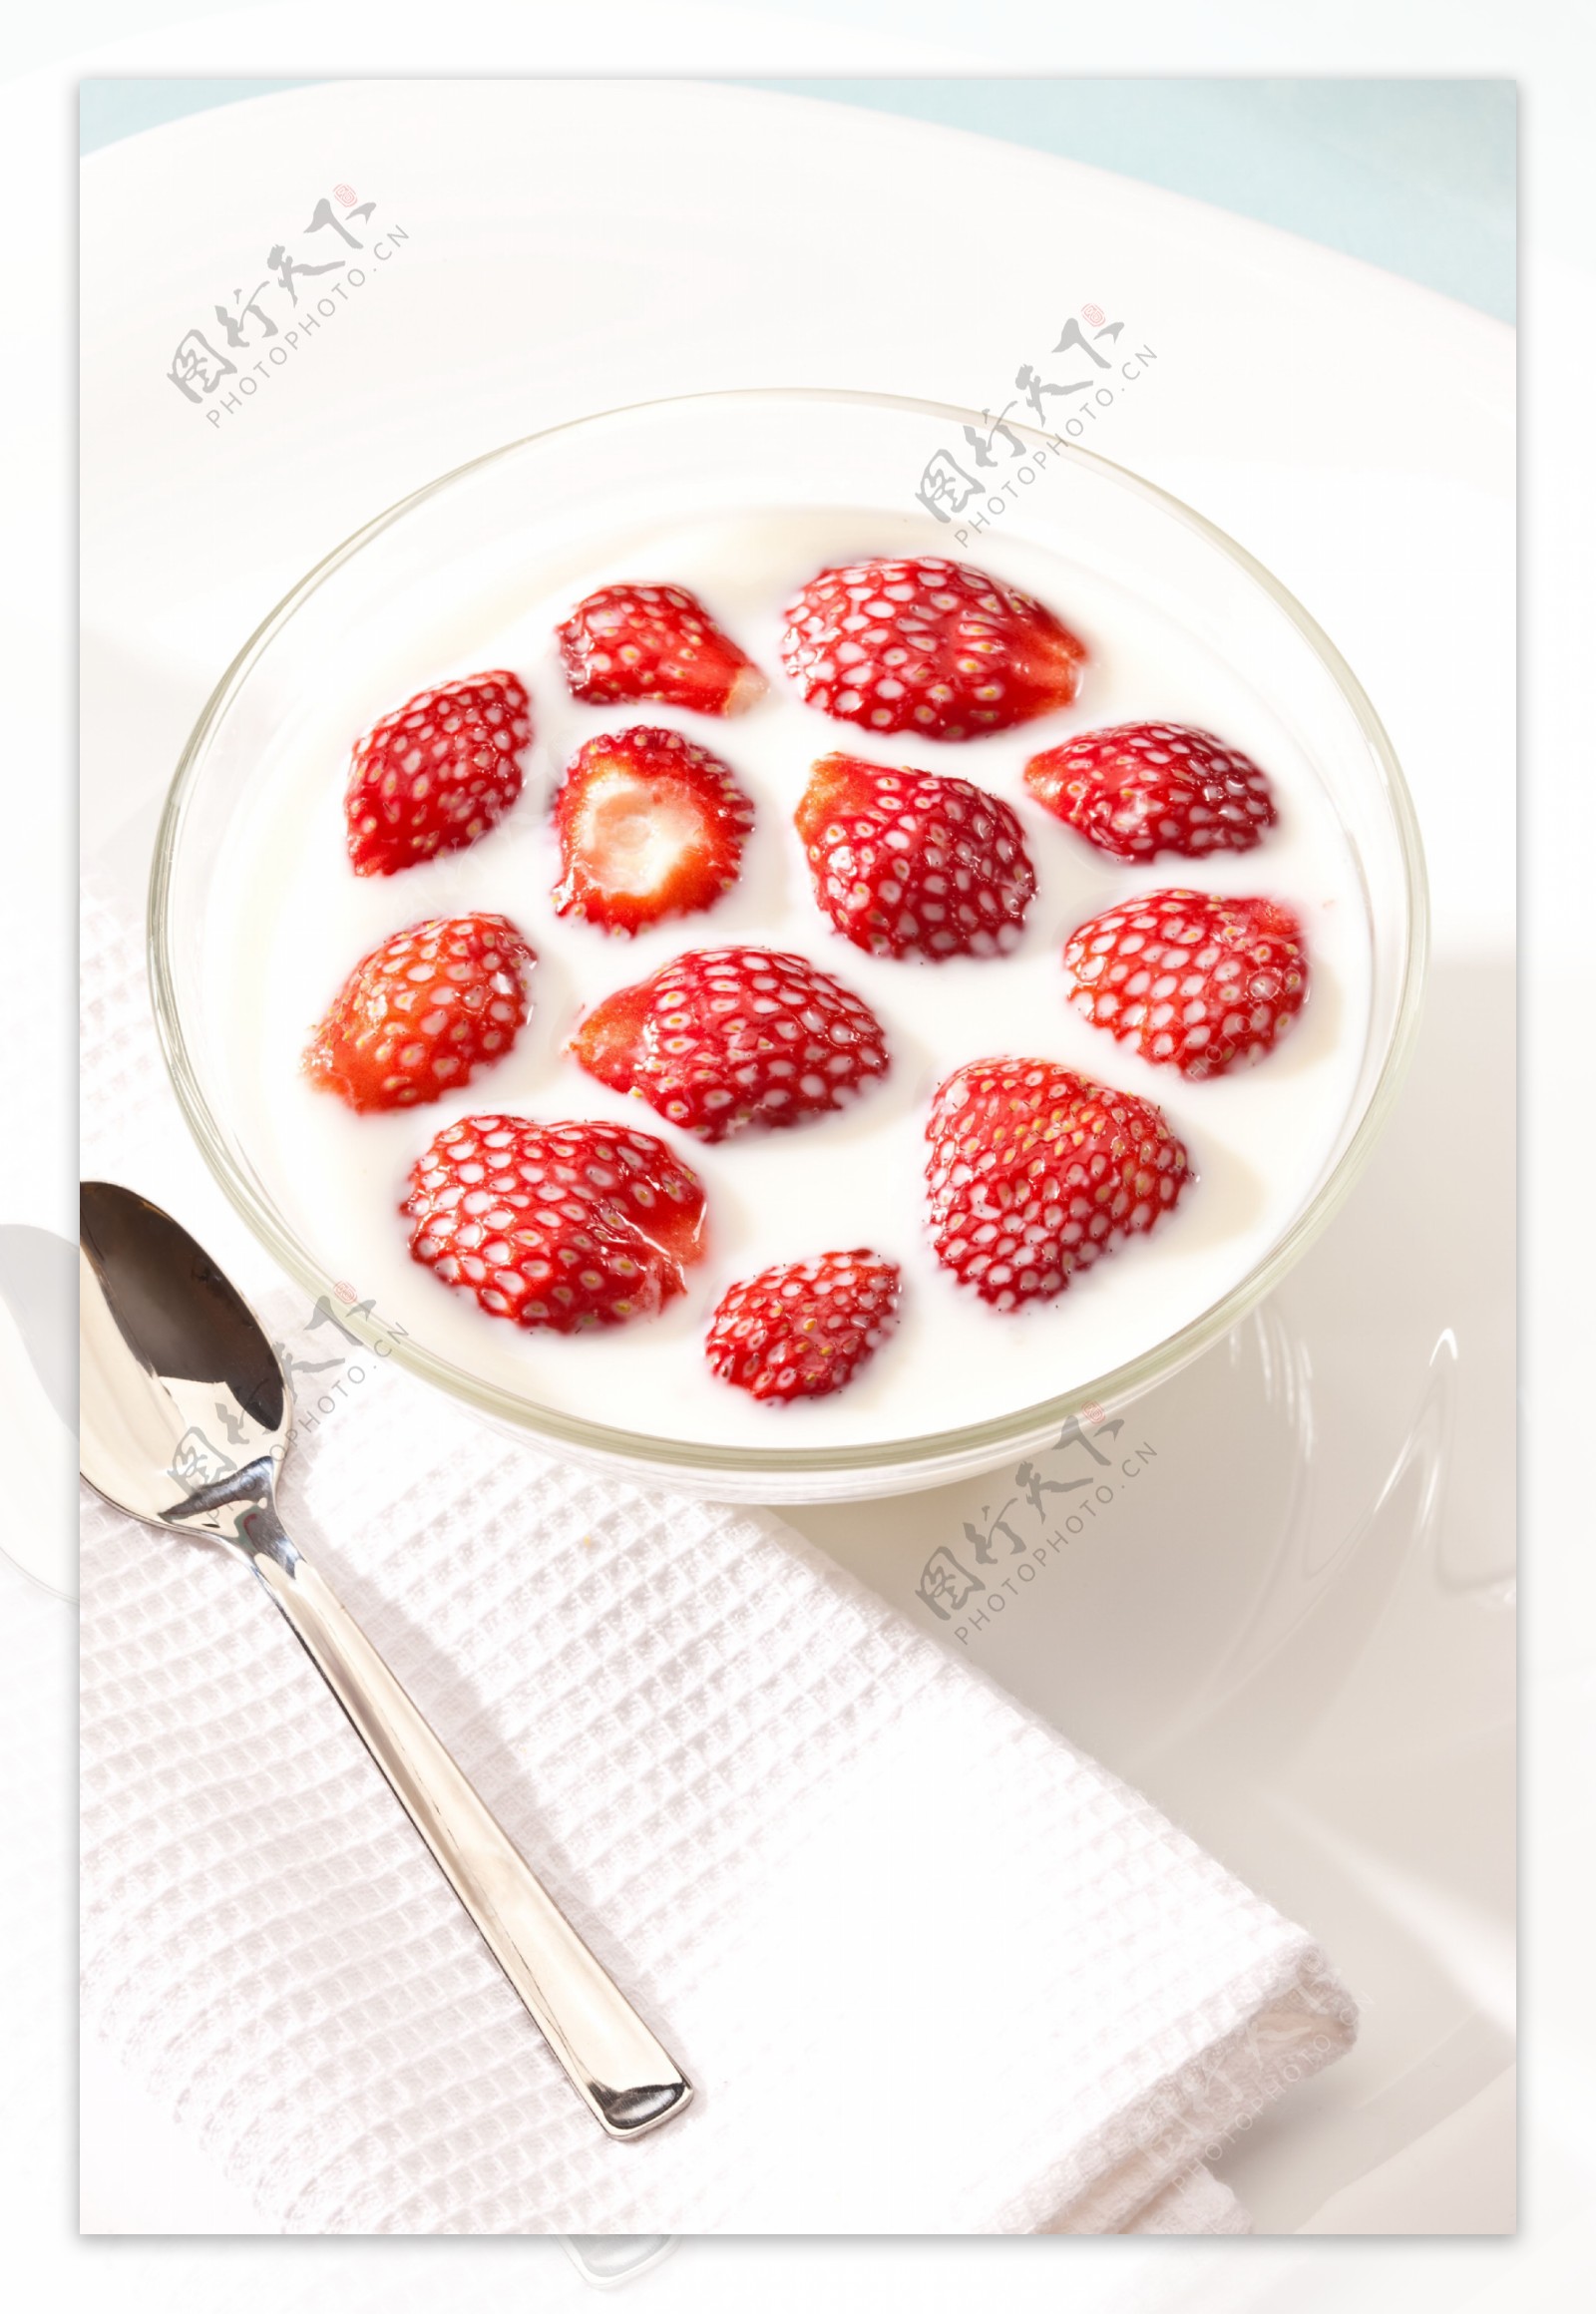 美味的草莓酸奶图片